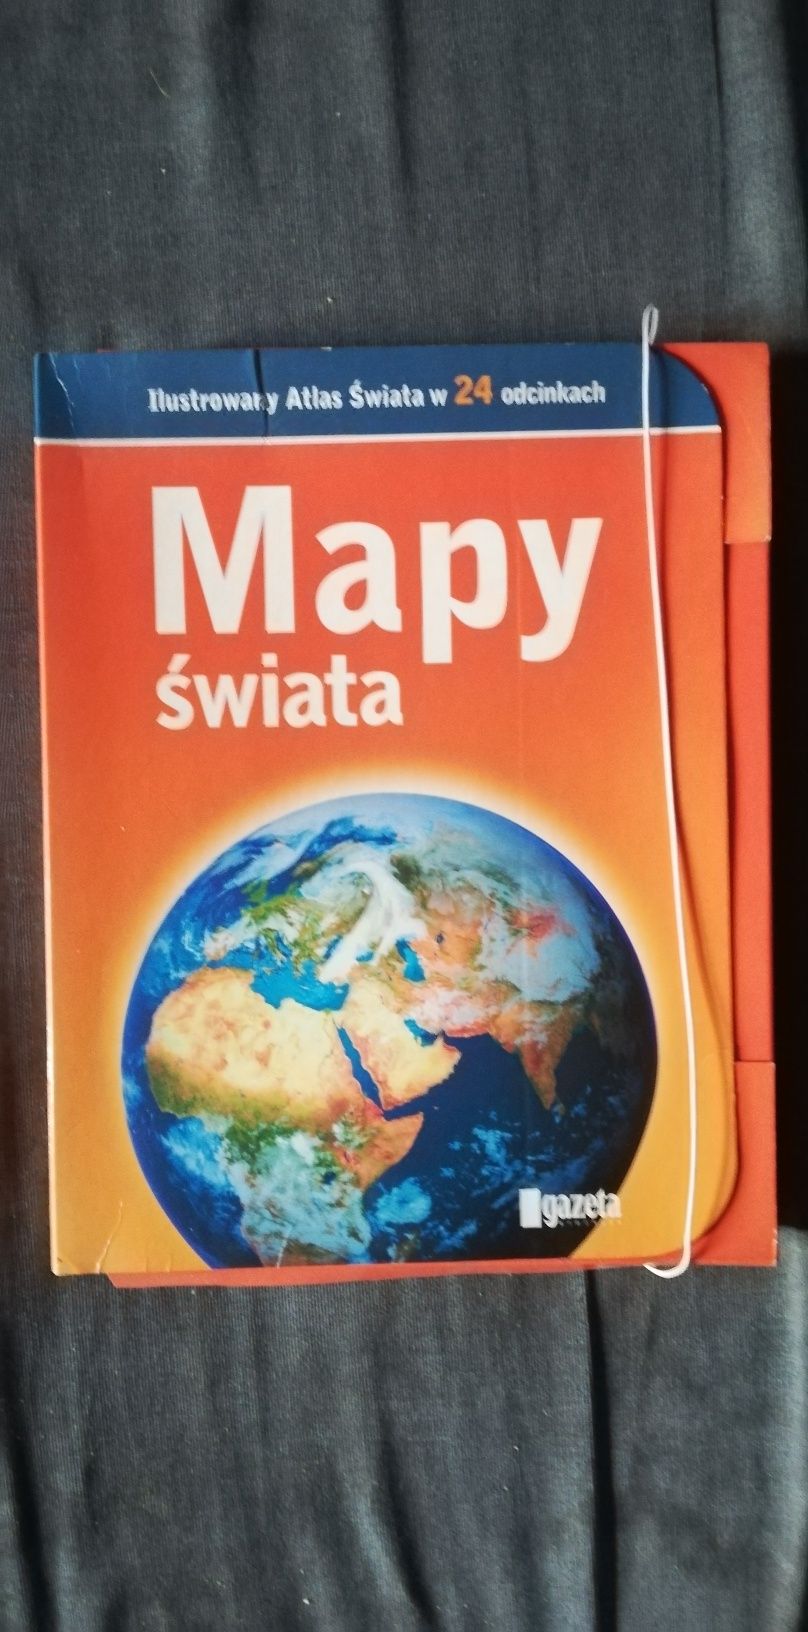 Mapy świata-Ilustrowany Atlas Świata w 24 odcinkach